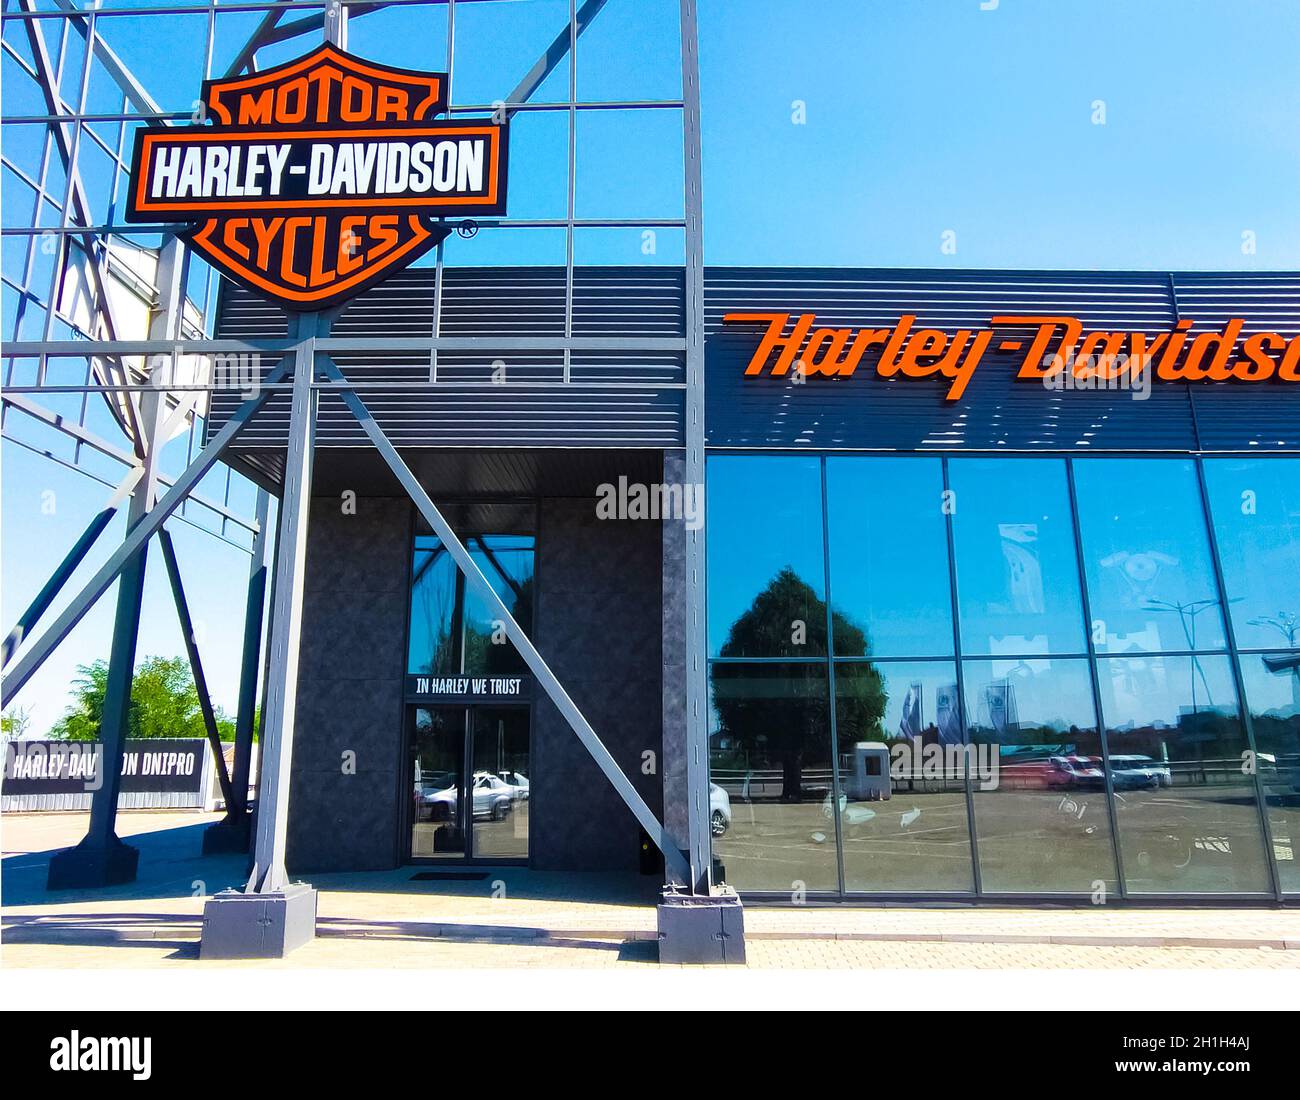 Kiew, Ukraine - 15. August 2020: Harley-Davidson Shop und Büro. Harley-Davidson, oder Harley, ist ein amerikanischer Motorradhersteller, gegründet in Milwa Stockfoto